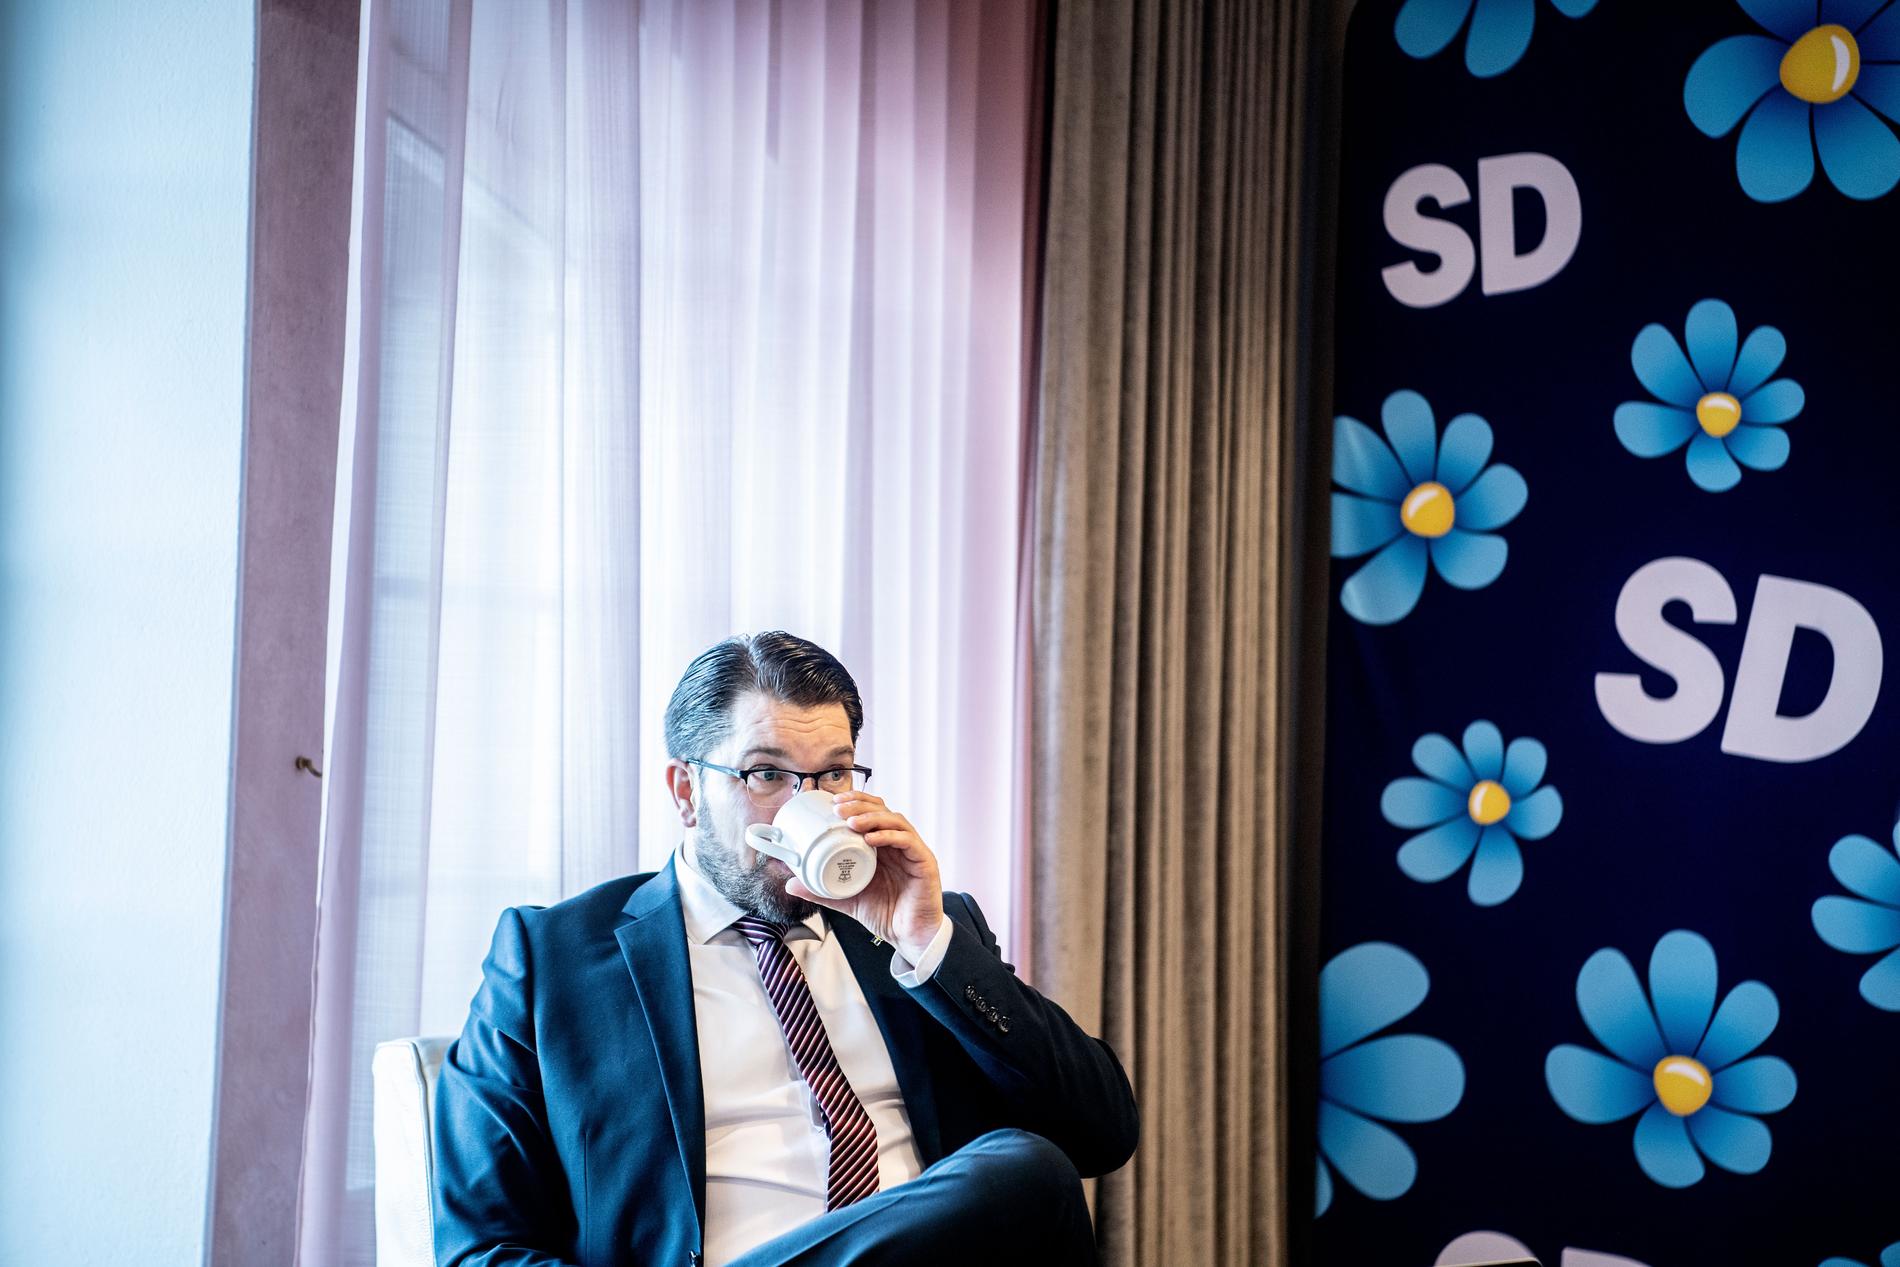 ”Det är nästan konstigt när man tänker tillbaka på det hur nästan obefintligt det var som parti”, säger Åkesson om SD på 1990-talet.